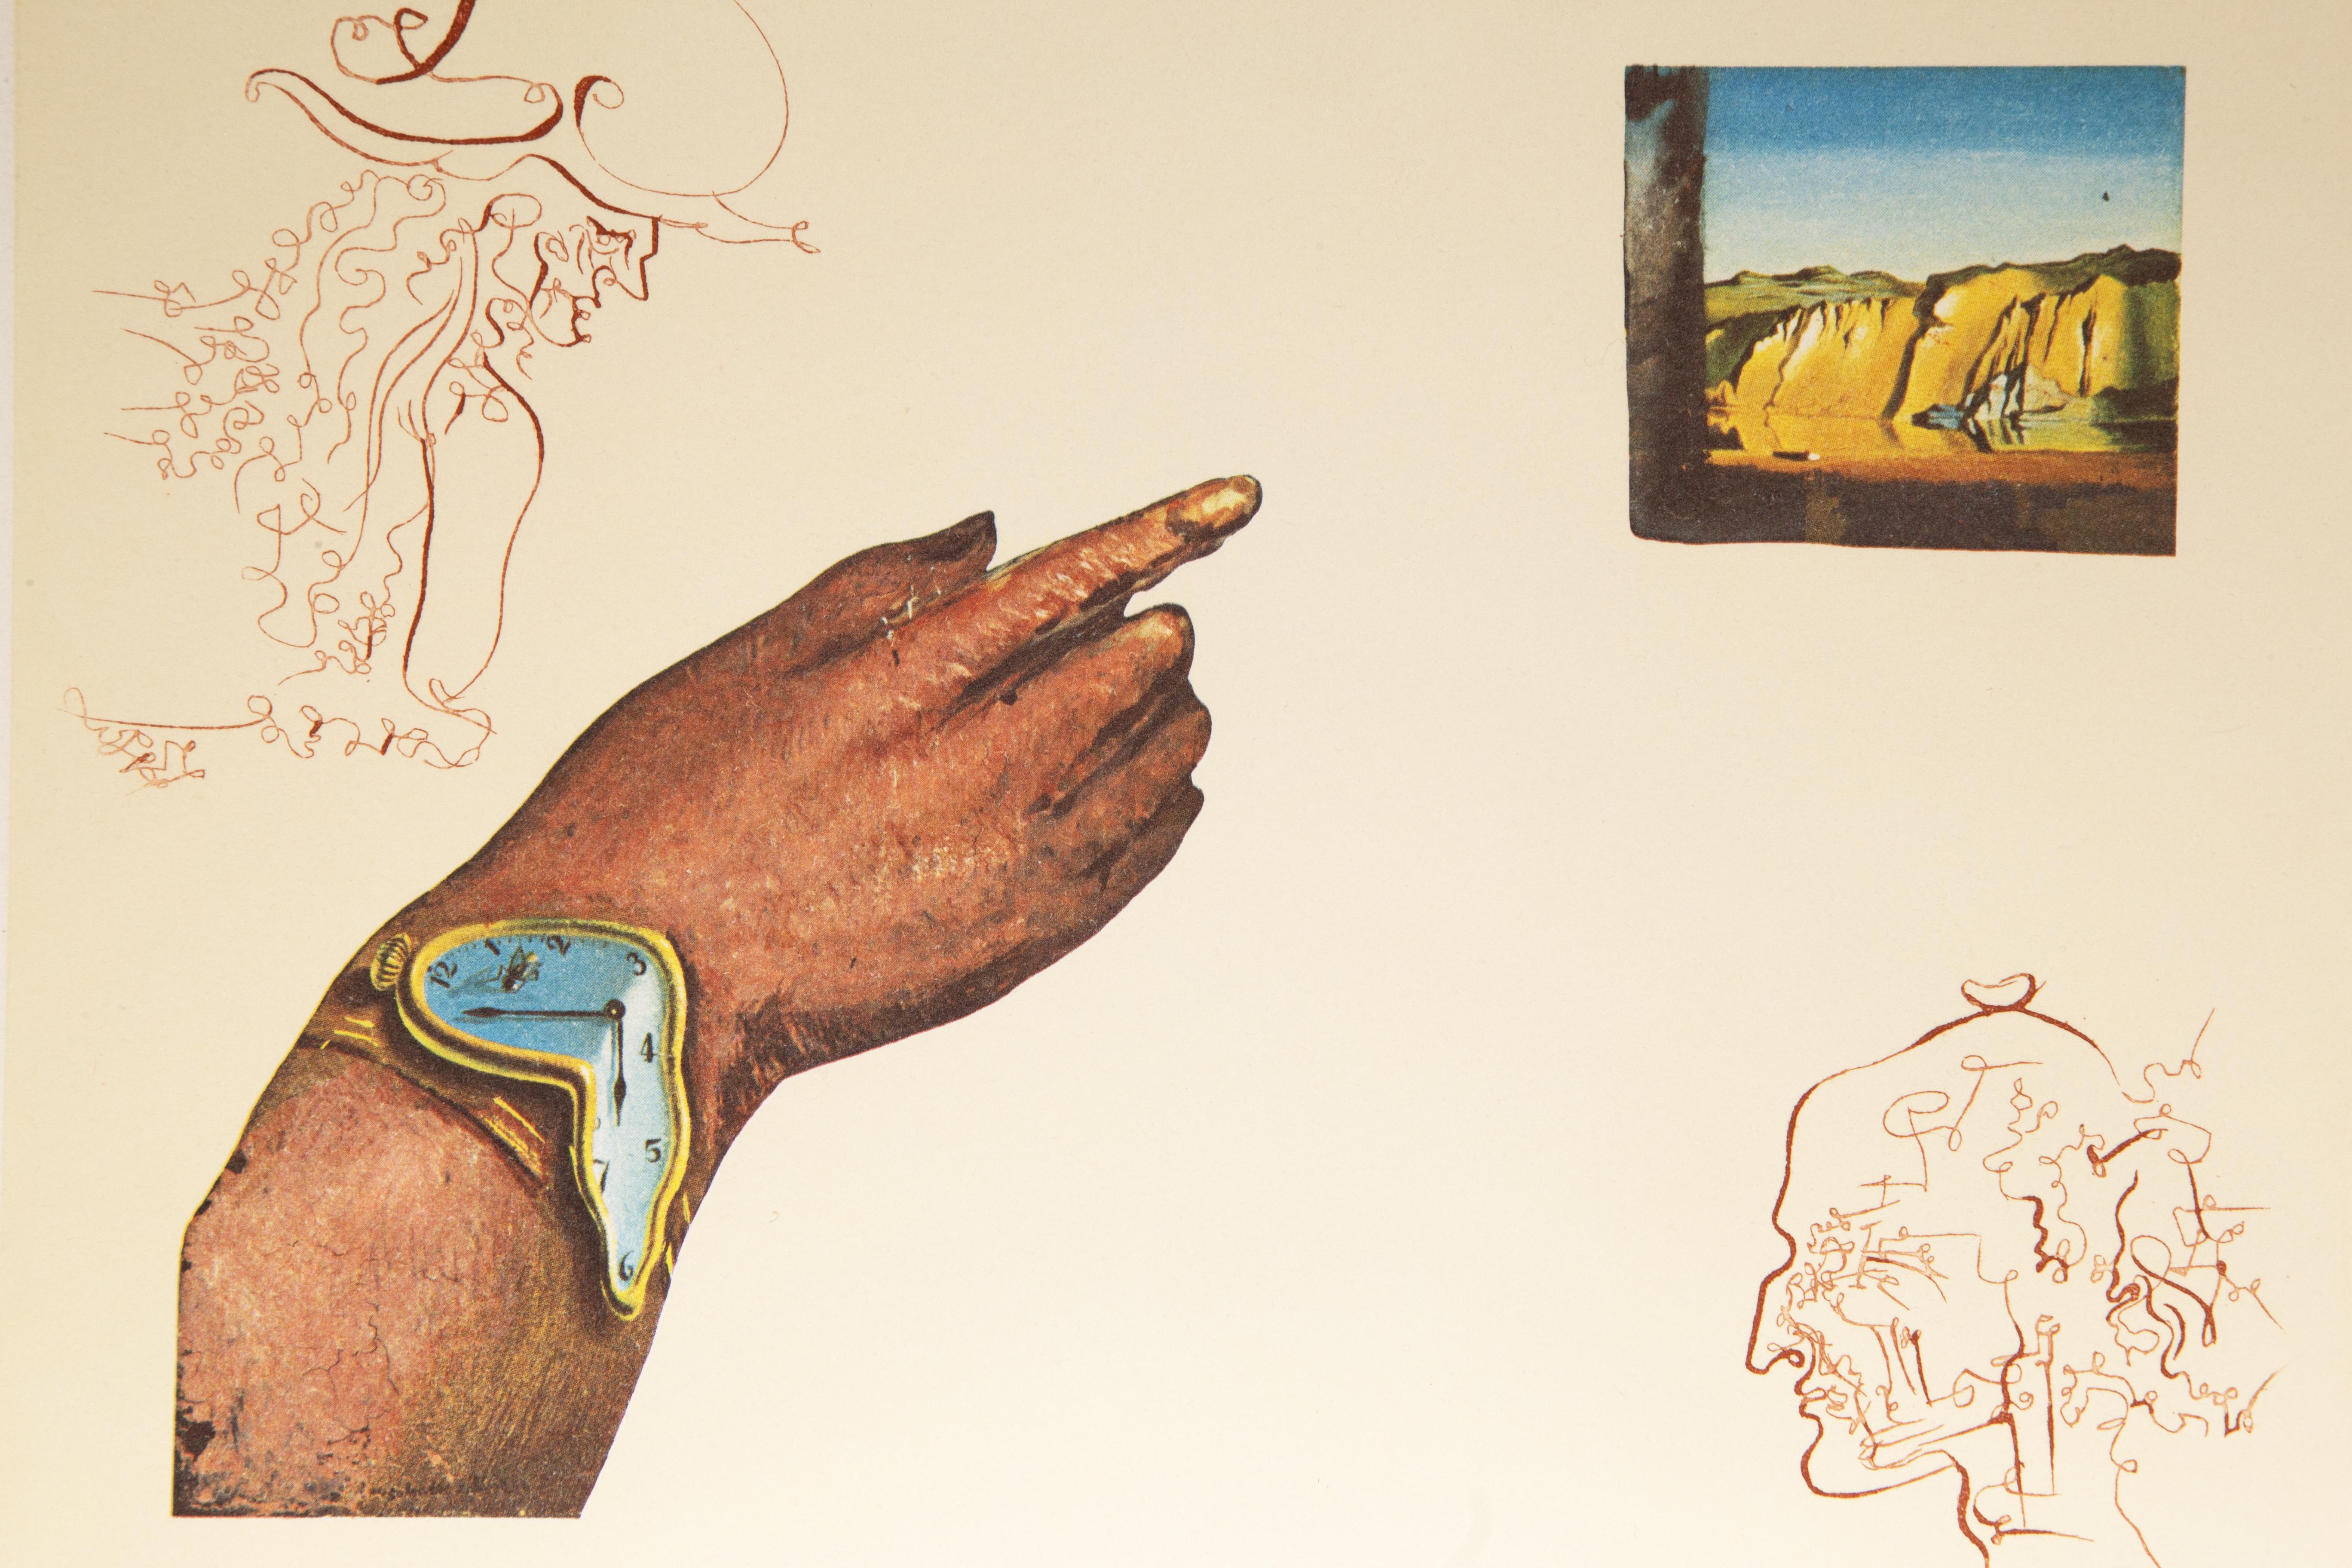 Reflection des cycles de la vie, lithographie et gravure de Salvador Dali - Print de Salvador Dalí